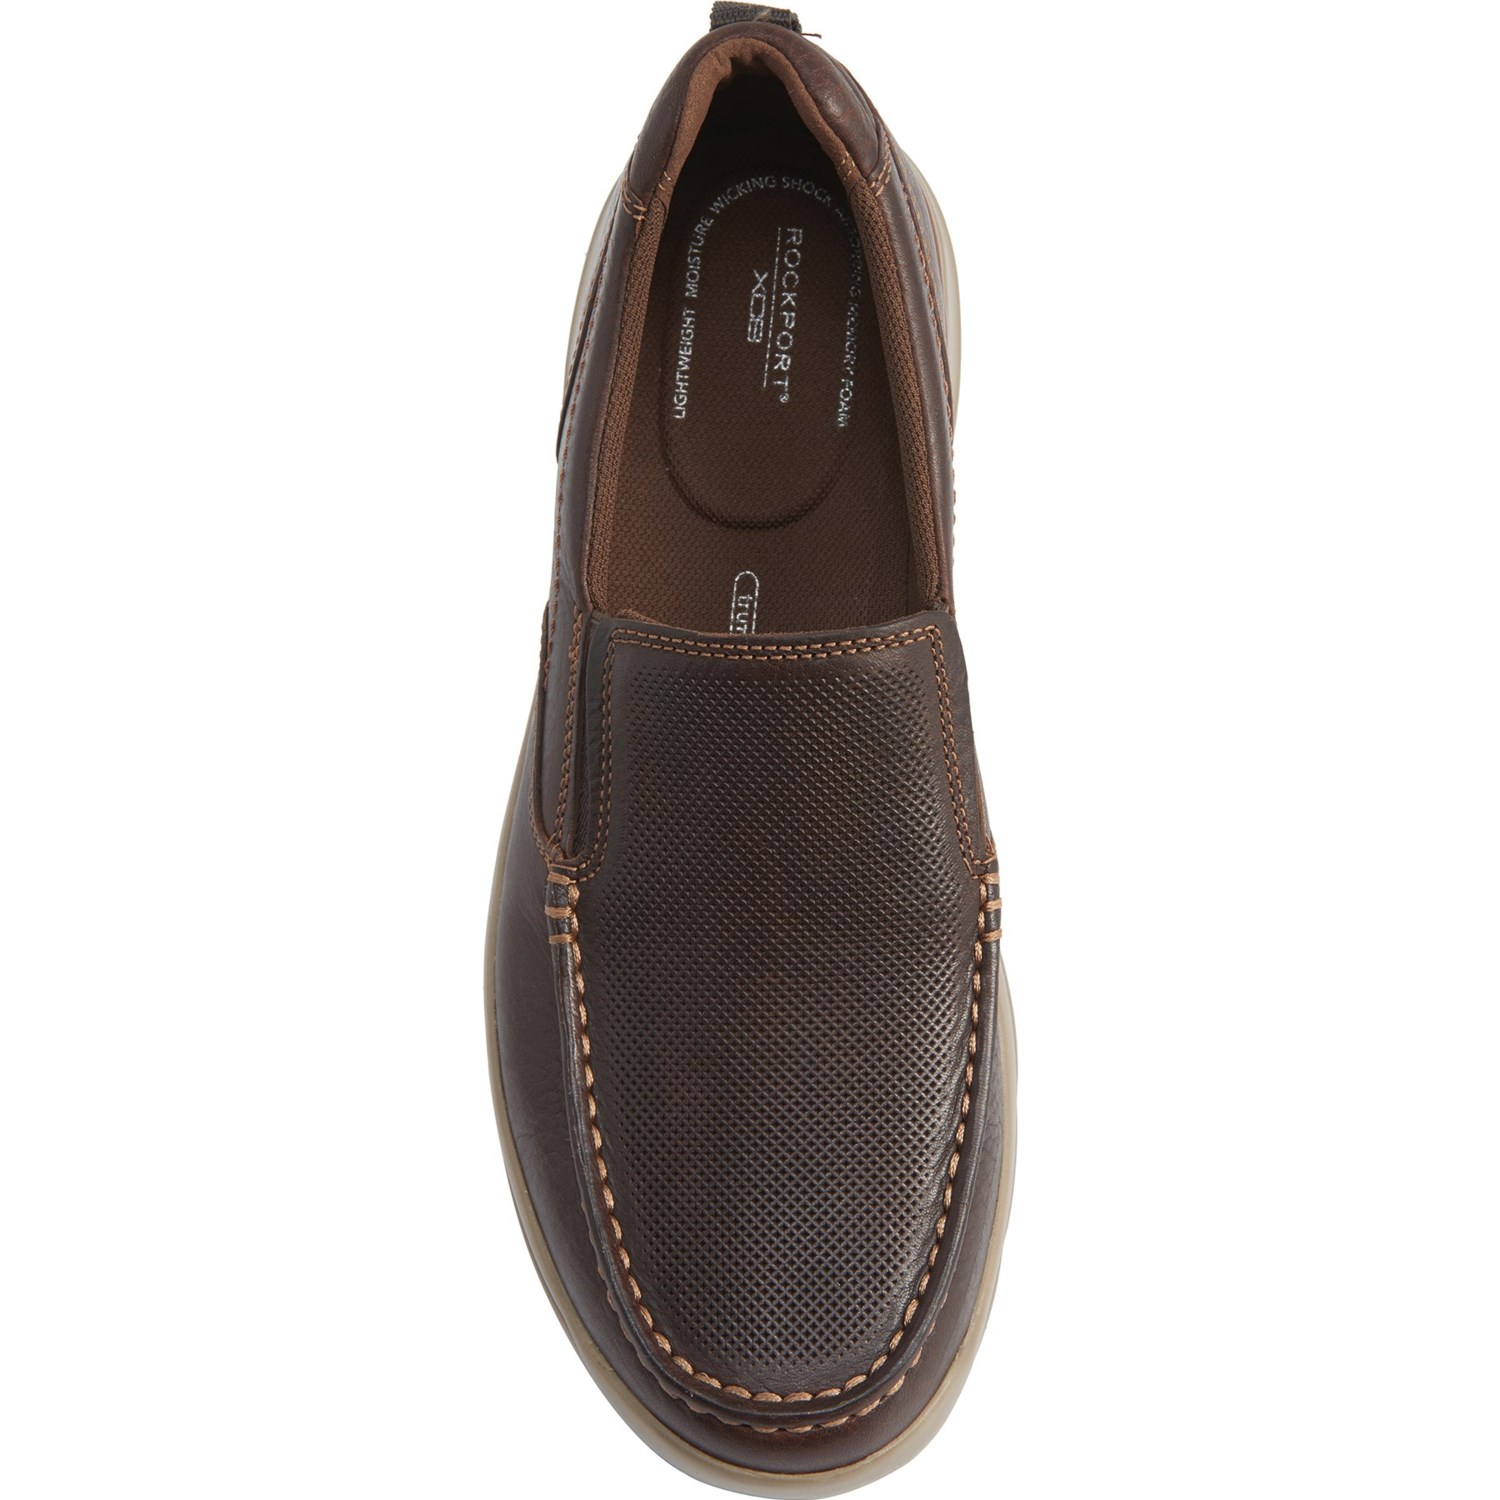 Rockport Bison City Edge Shoes (For Men) - Save 75%